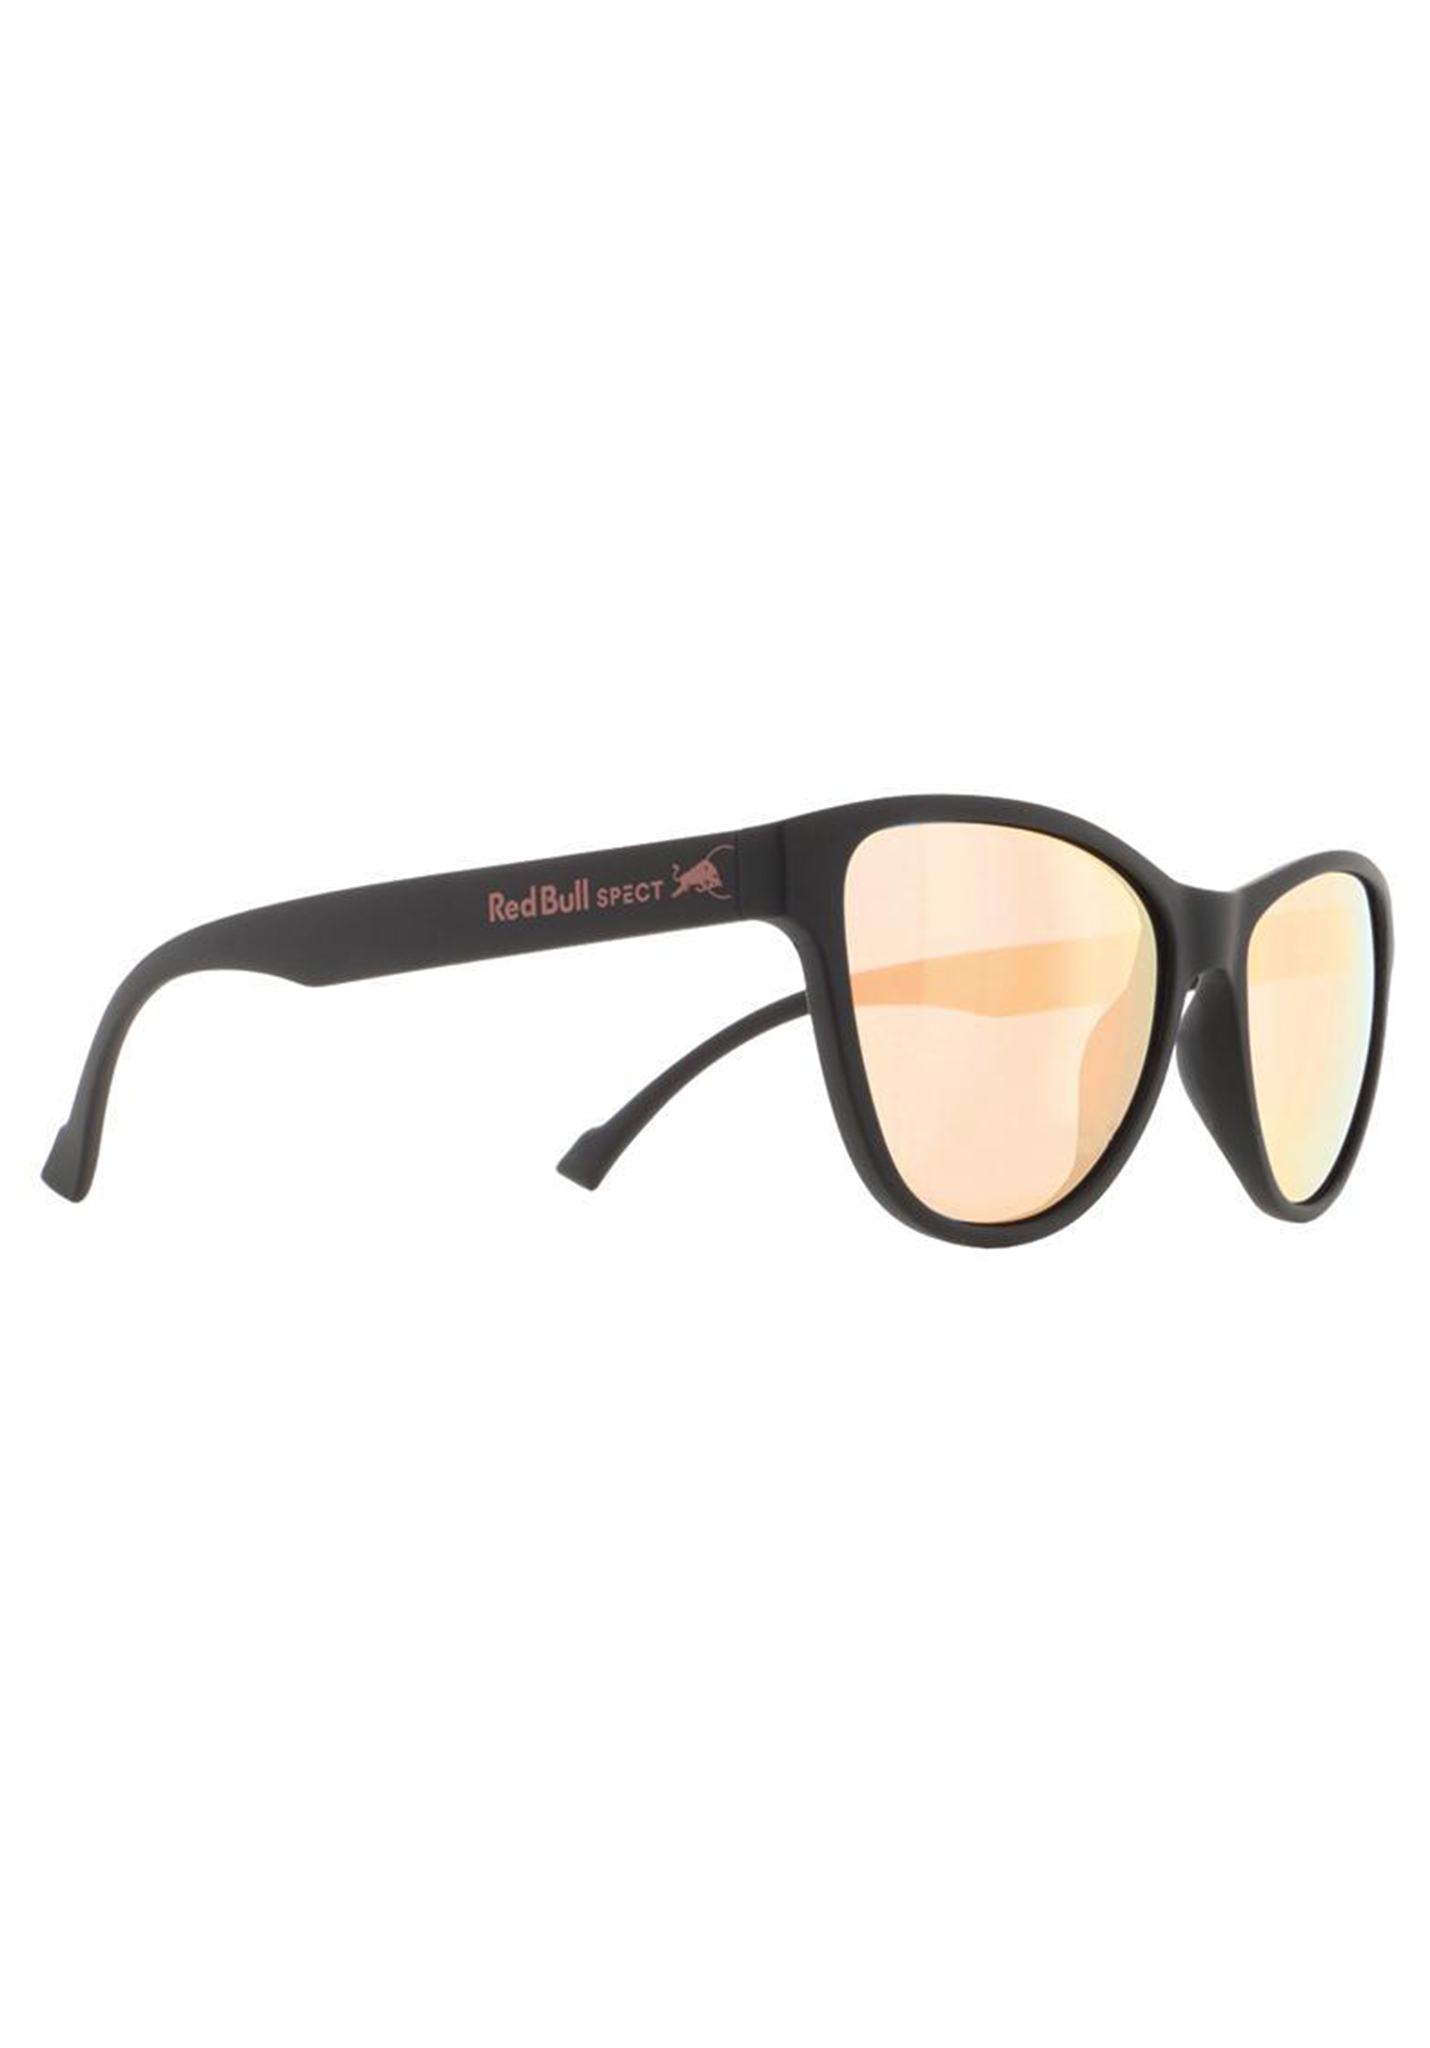 Red Bull SPECT Eyewear Shine Sonnenbrillen schwarz/rauch mit pfirsichfarbenem spiegel pol One Size